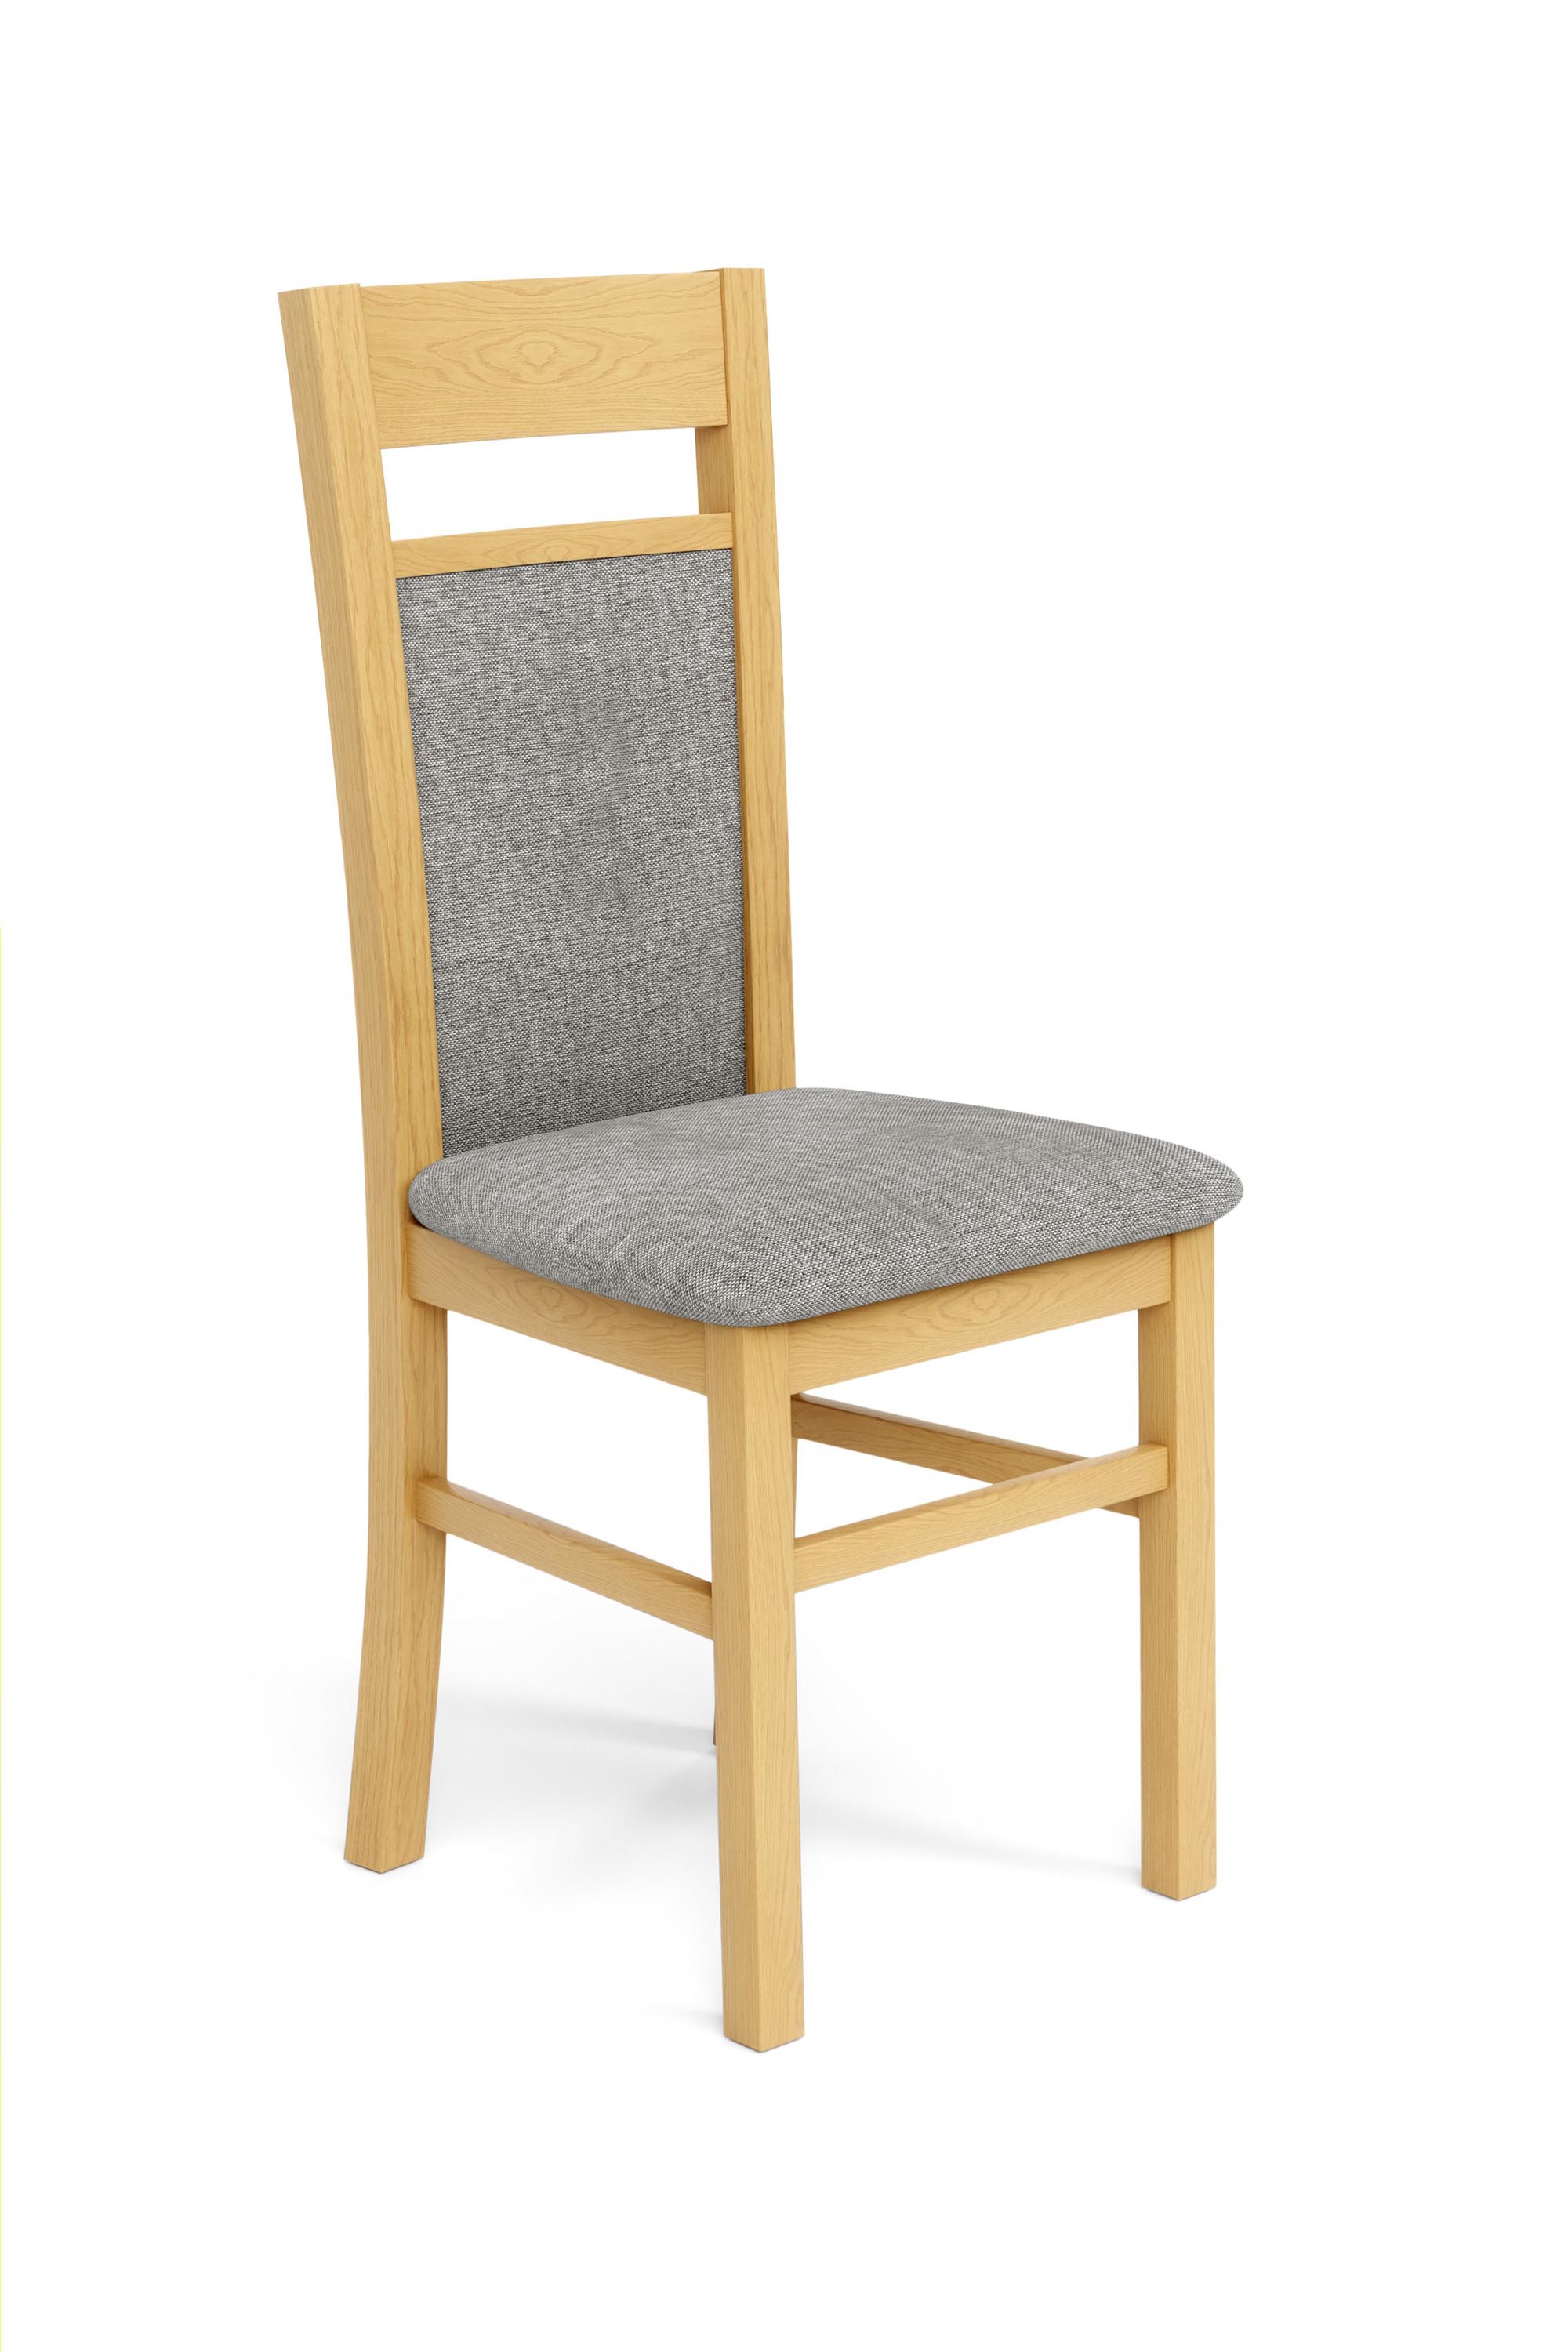 GERARD2 krzesło dąb miodowy / tap: Inari 91 gerard2 krzesło dąb miodowy / tap: inari 91